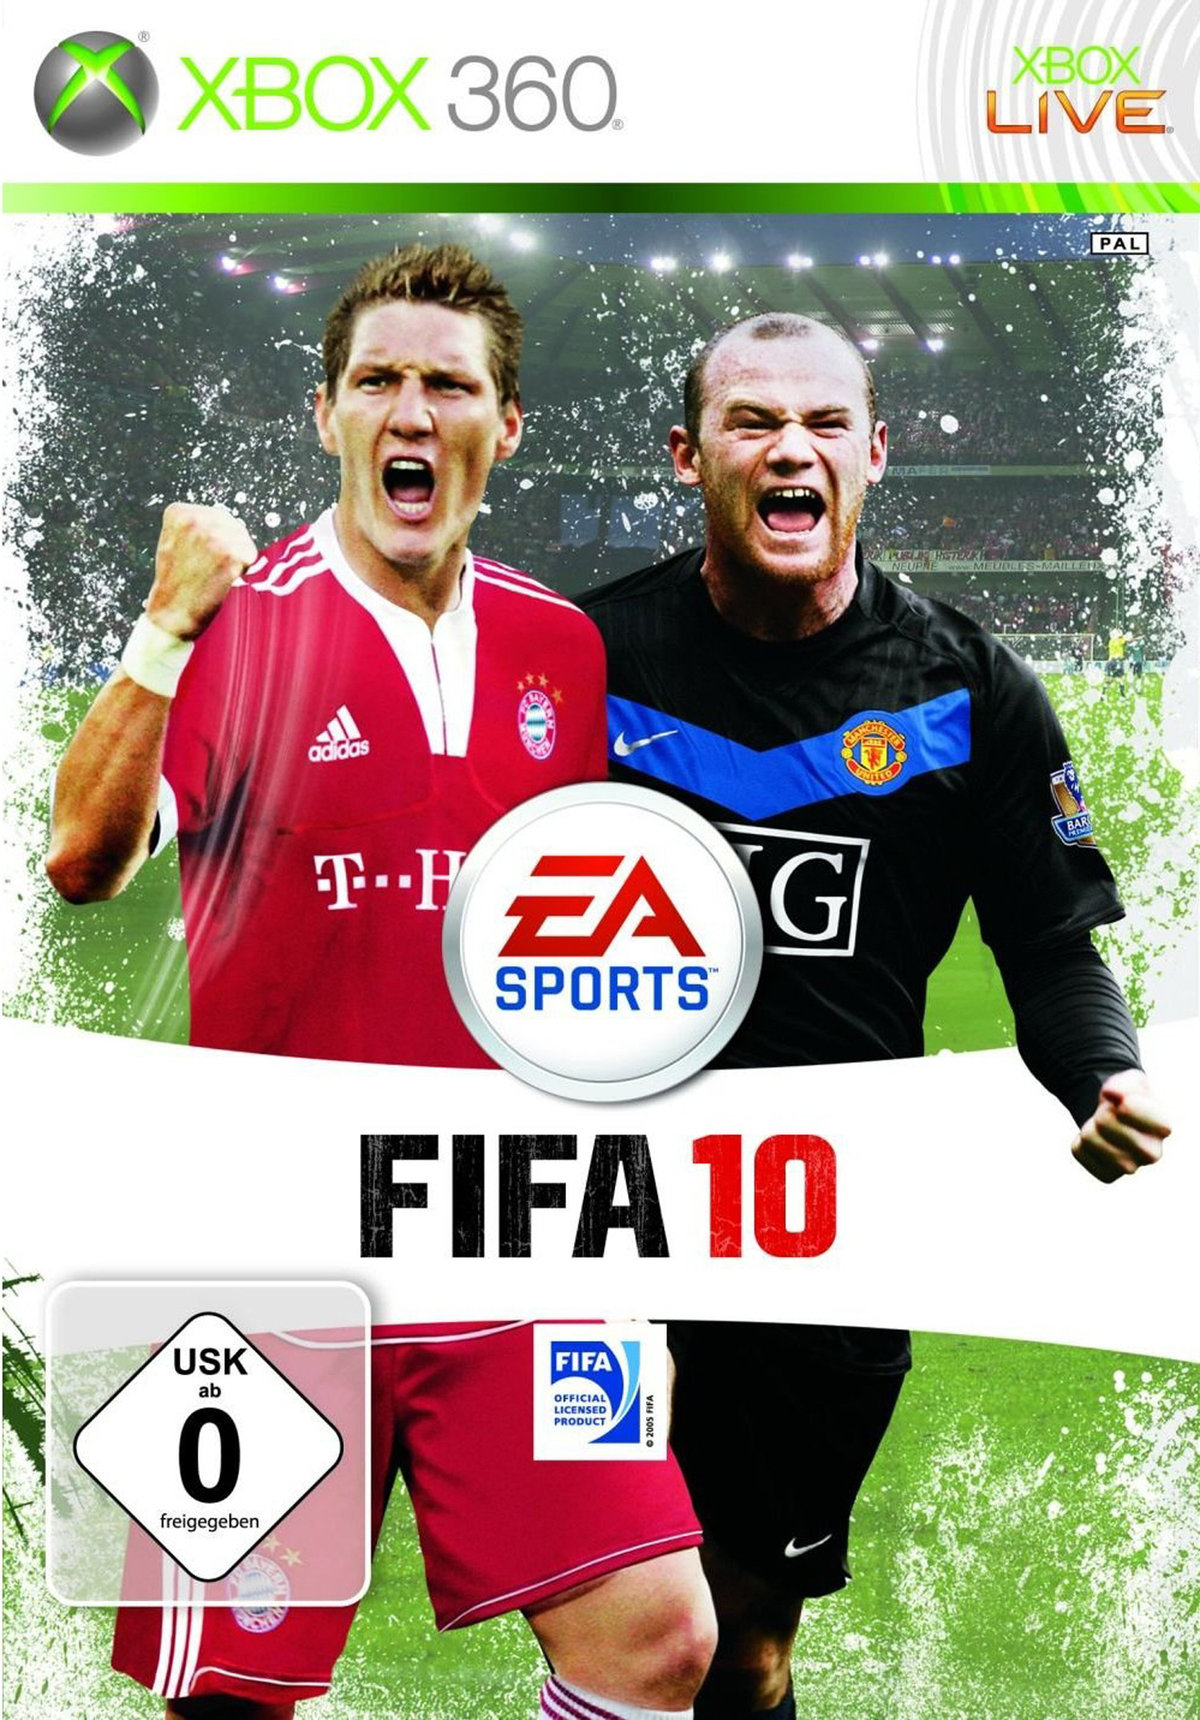 FIFA 10 SWP Spiel für Xbox 360 ausleihen bei verleihshop.de